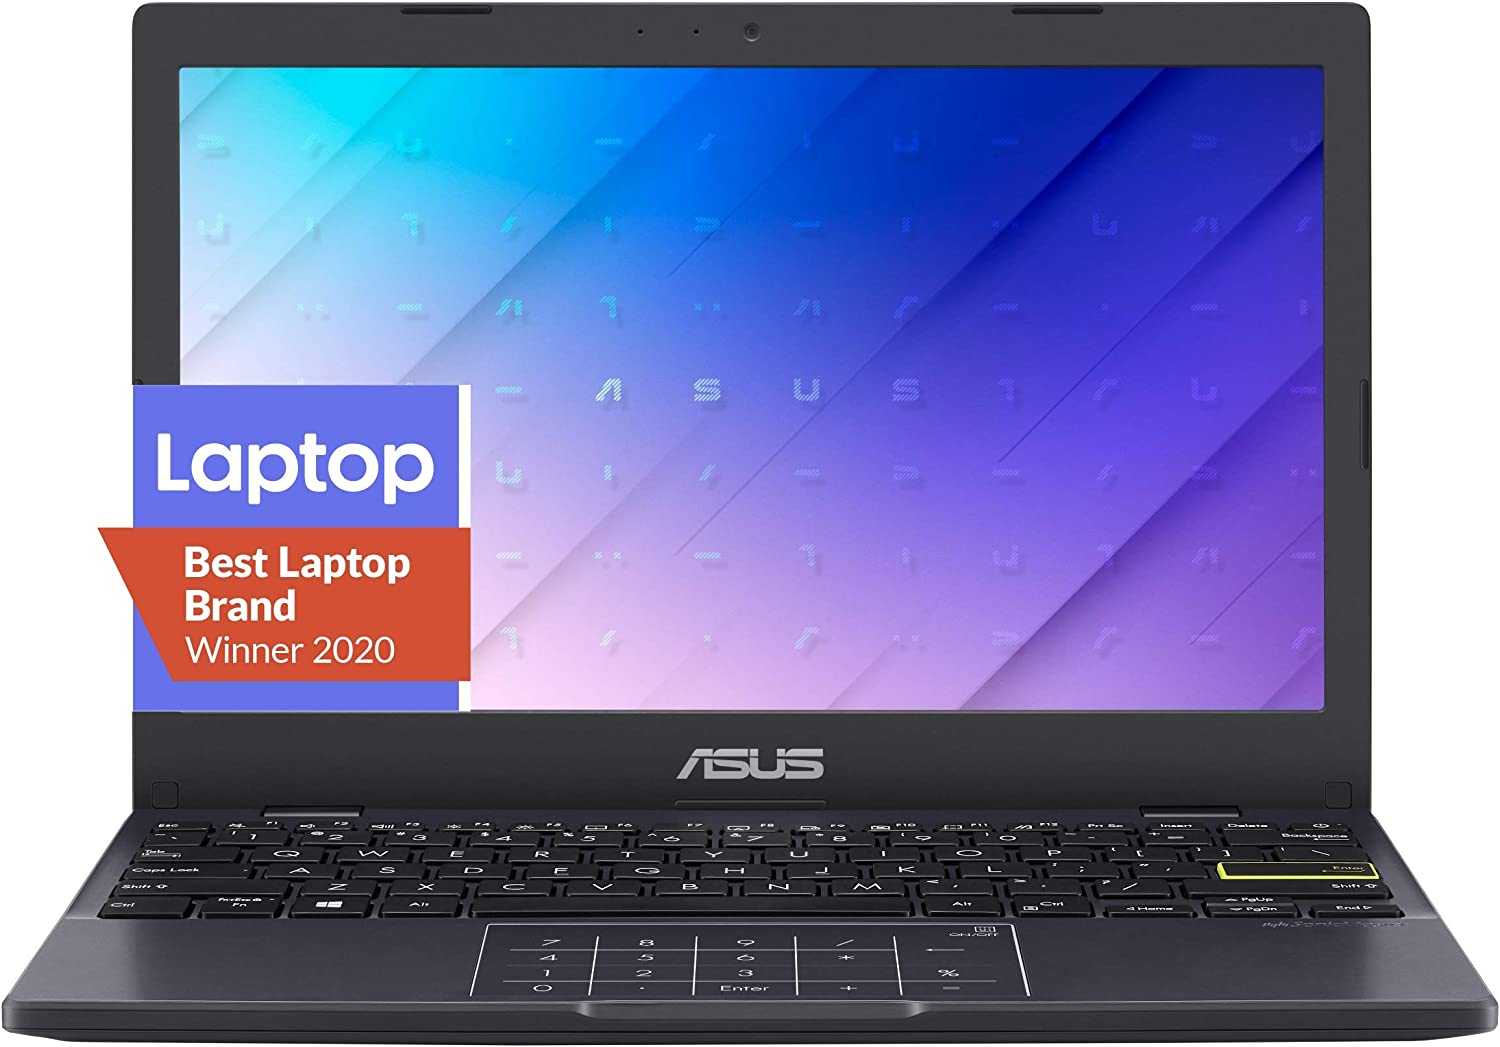 ASUS Vivobook Go 12 L210 Laptop